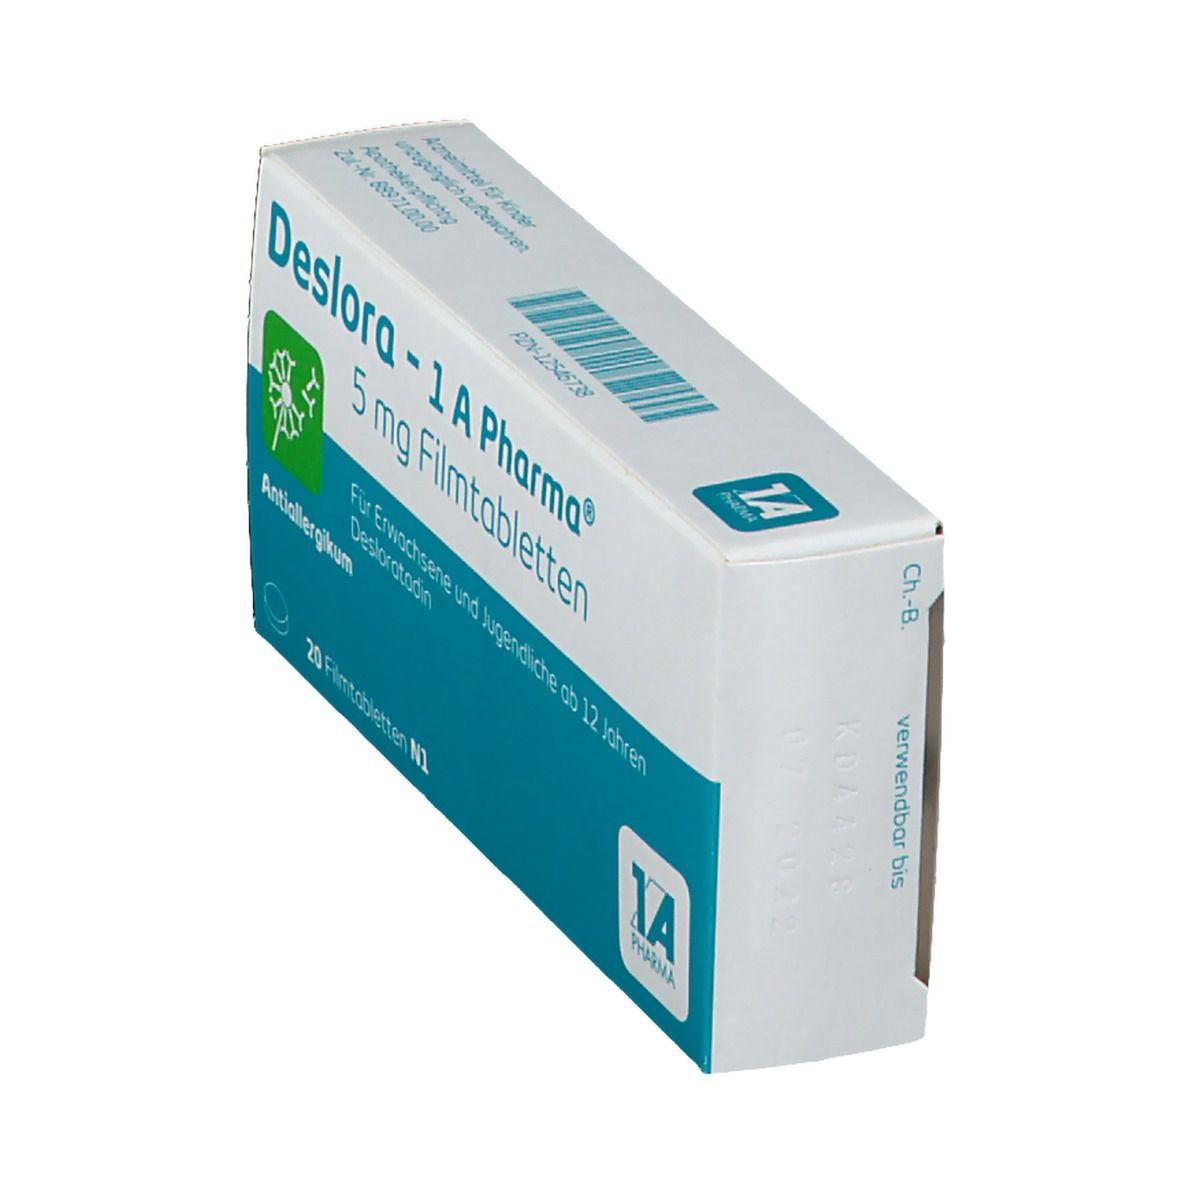 Deslora - 1 A Pharma®